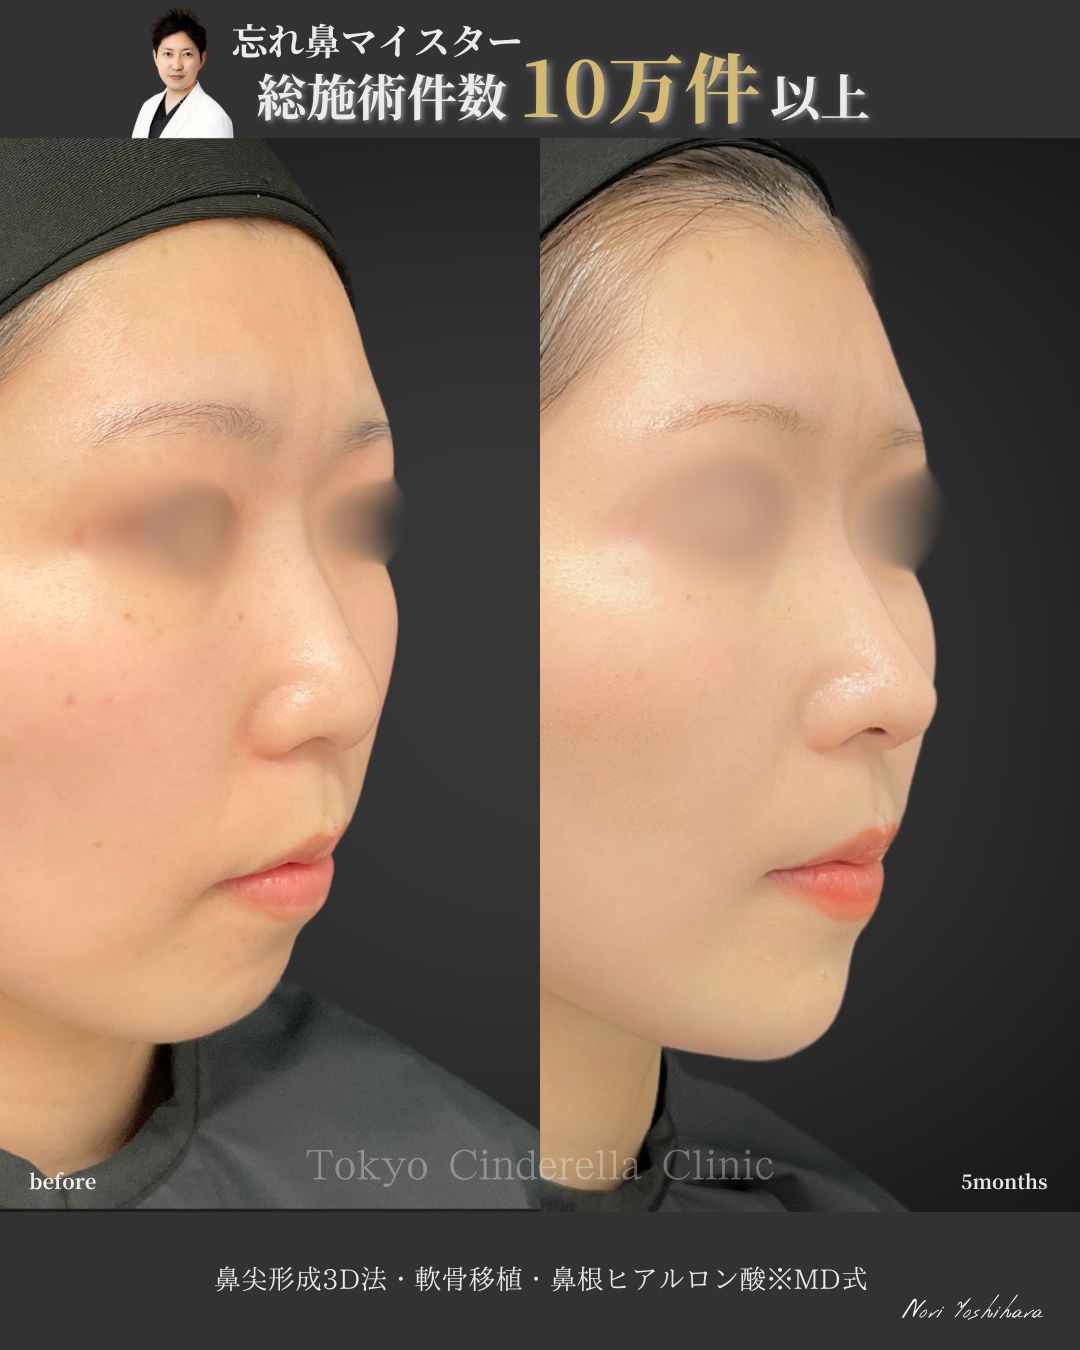 鼻尖形成3D法と軟骨移植と鼻根ヒアルロン酸をMD式で受けた女性の症例